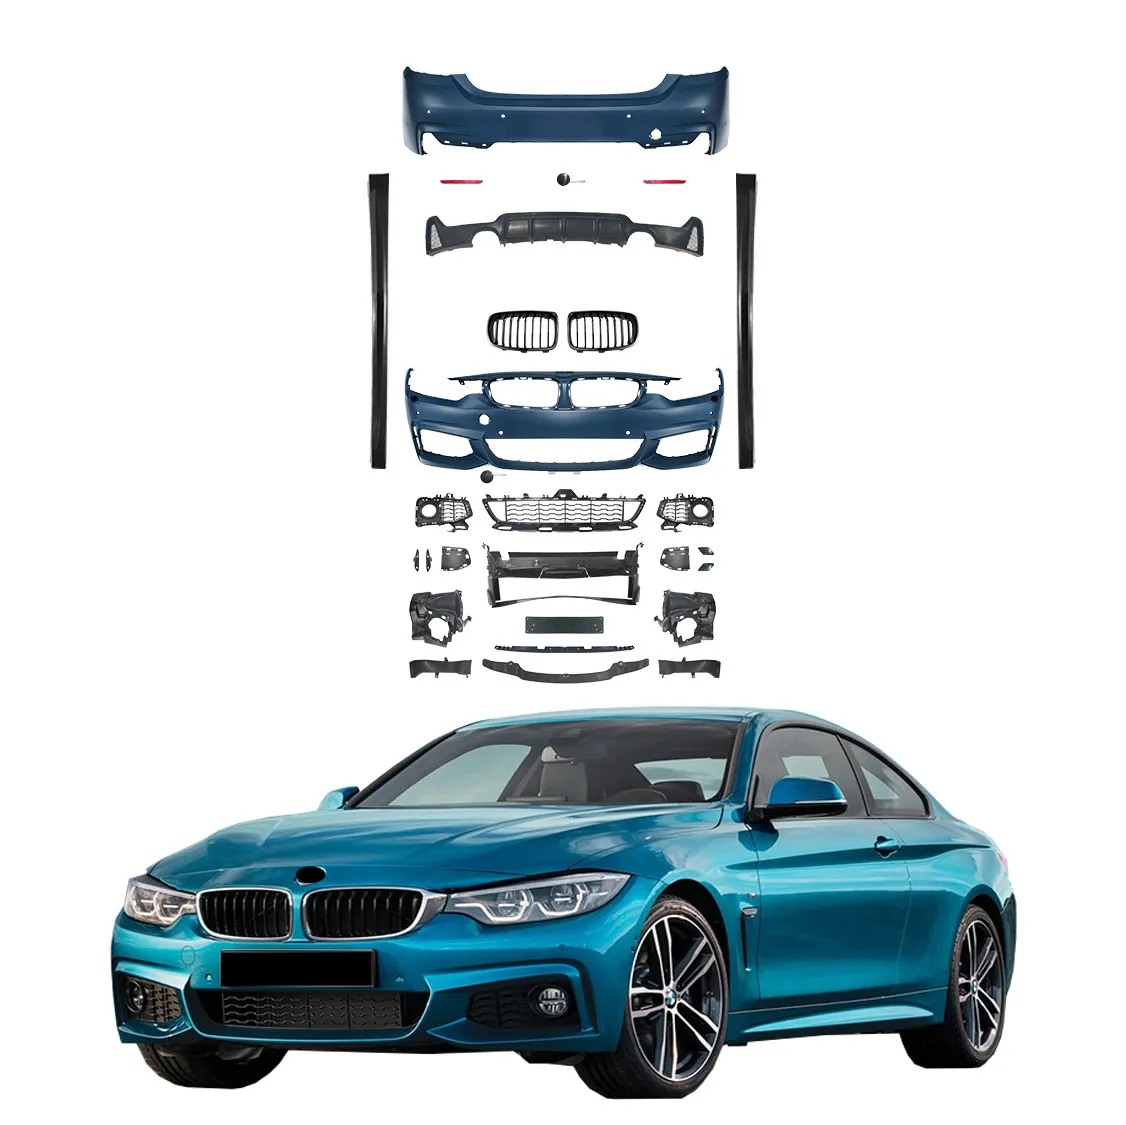 Para BMW F32 F33 14-19 actualización a MT modelo Kit de carrocería incluye conjunto de parachoques delantero y trasero faldones laterales difusor trasero